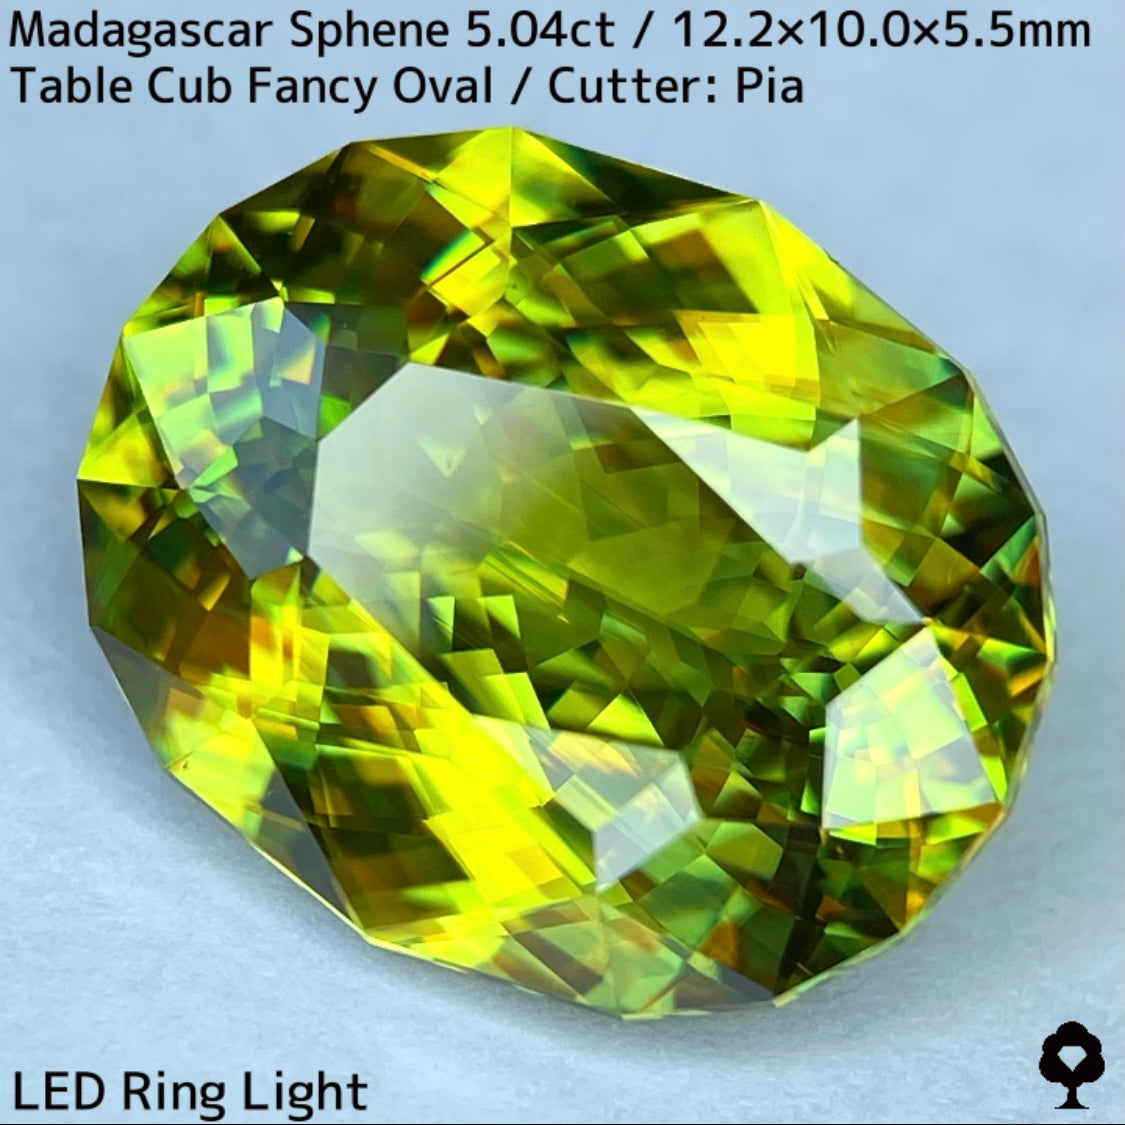 マダガスカル産スフェーン 5.041ct★イエローイッシュグリーンの爽やかで華やかなファイアー溢れる美結晶